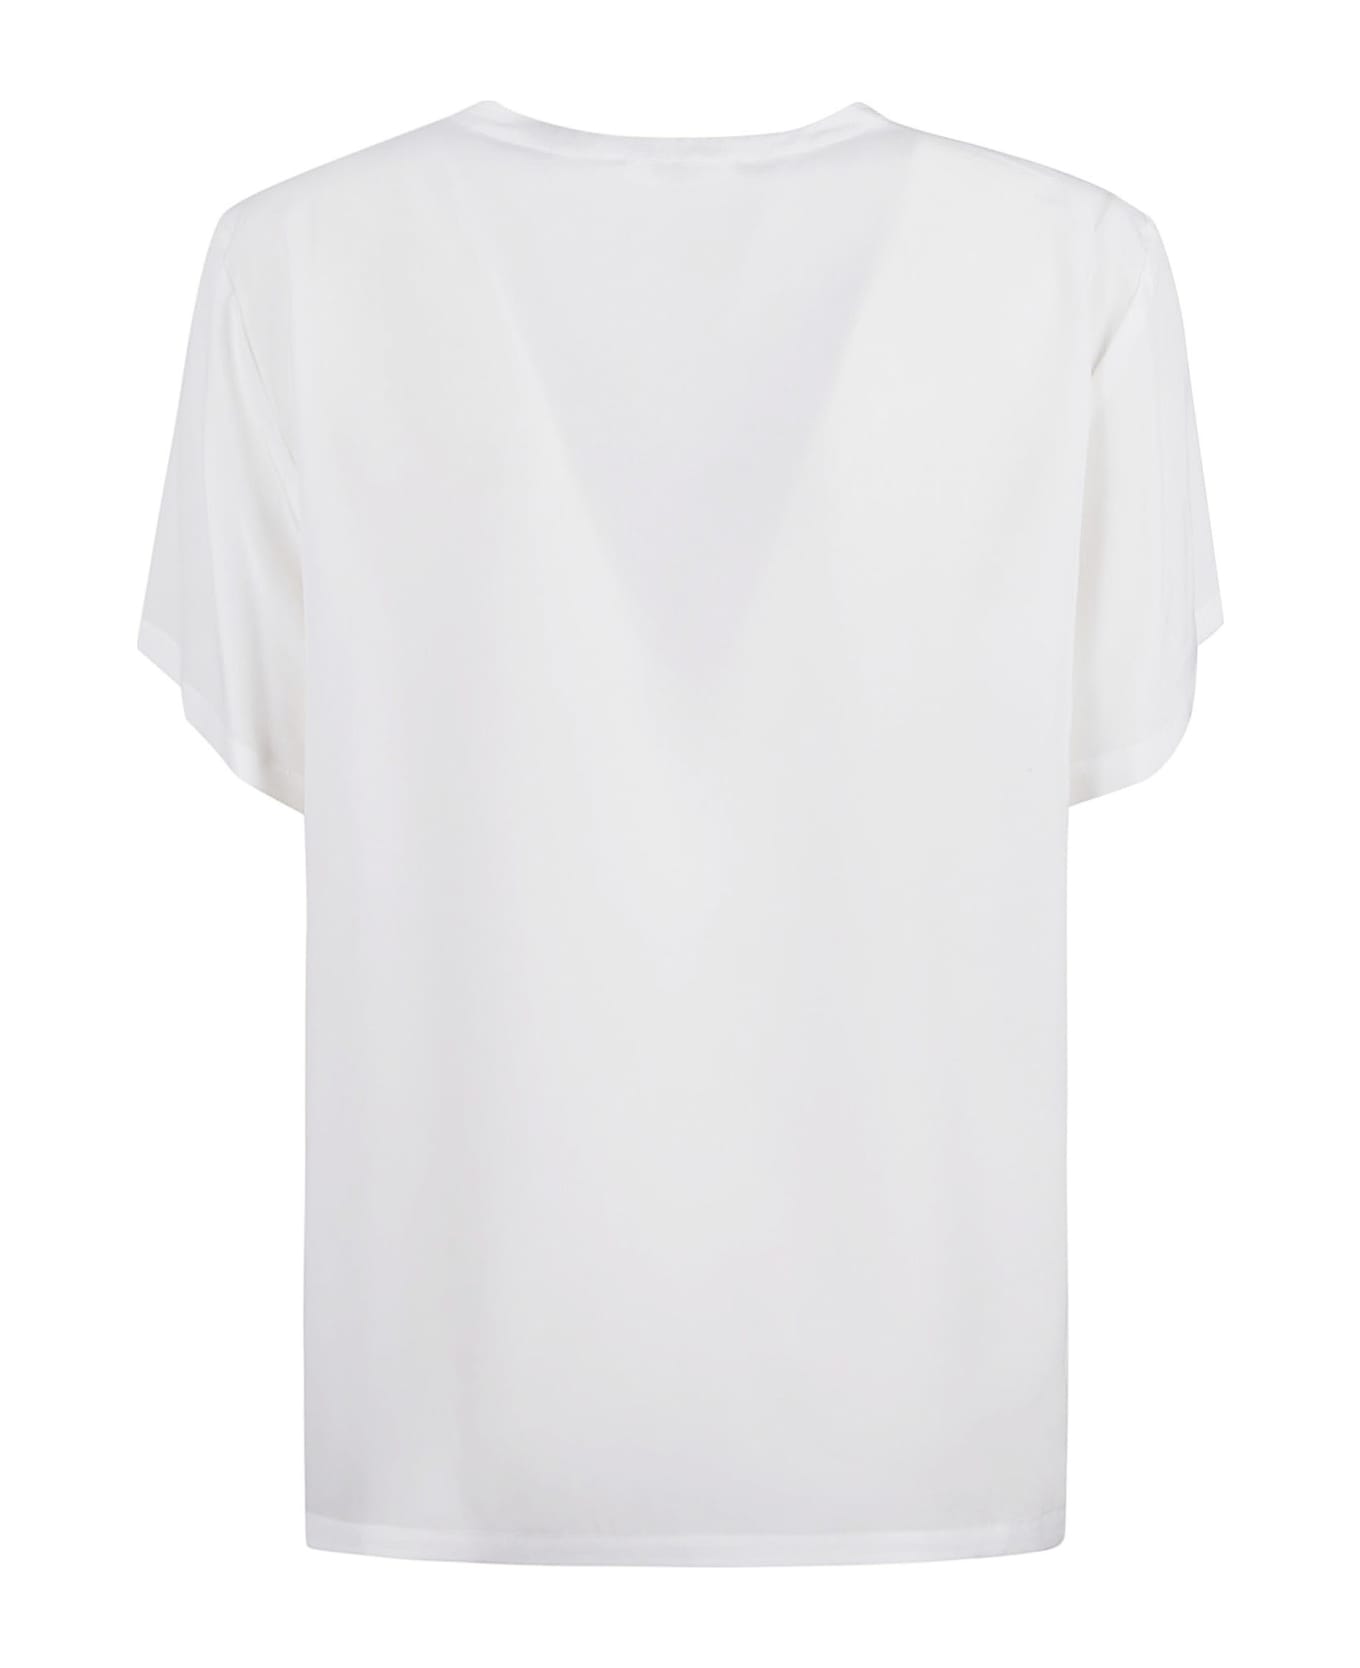 Barba Napoli W/neck Shirt - White